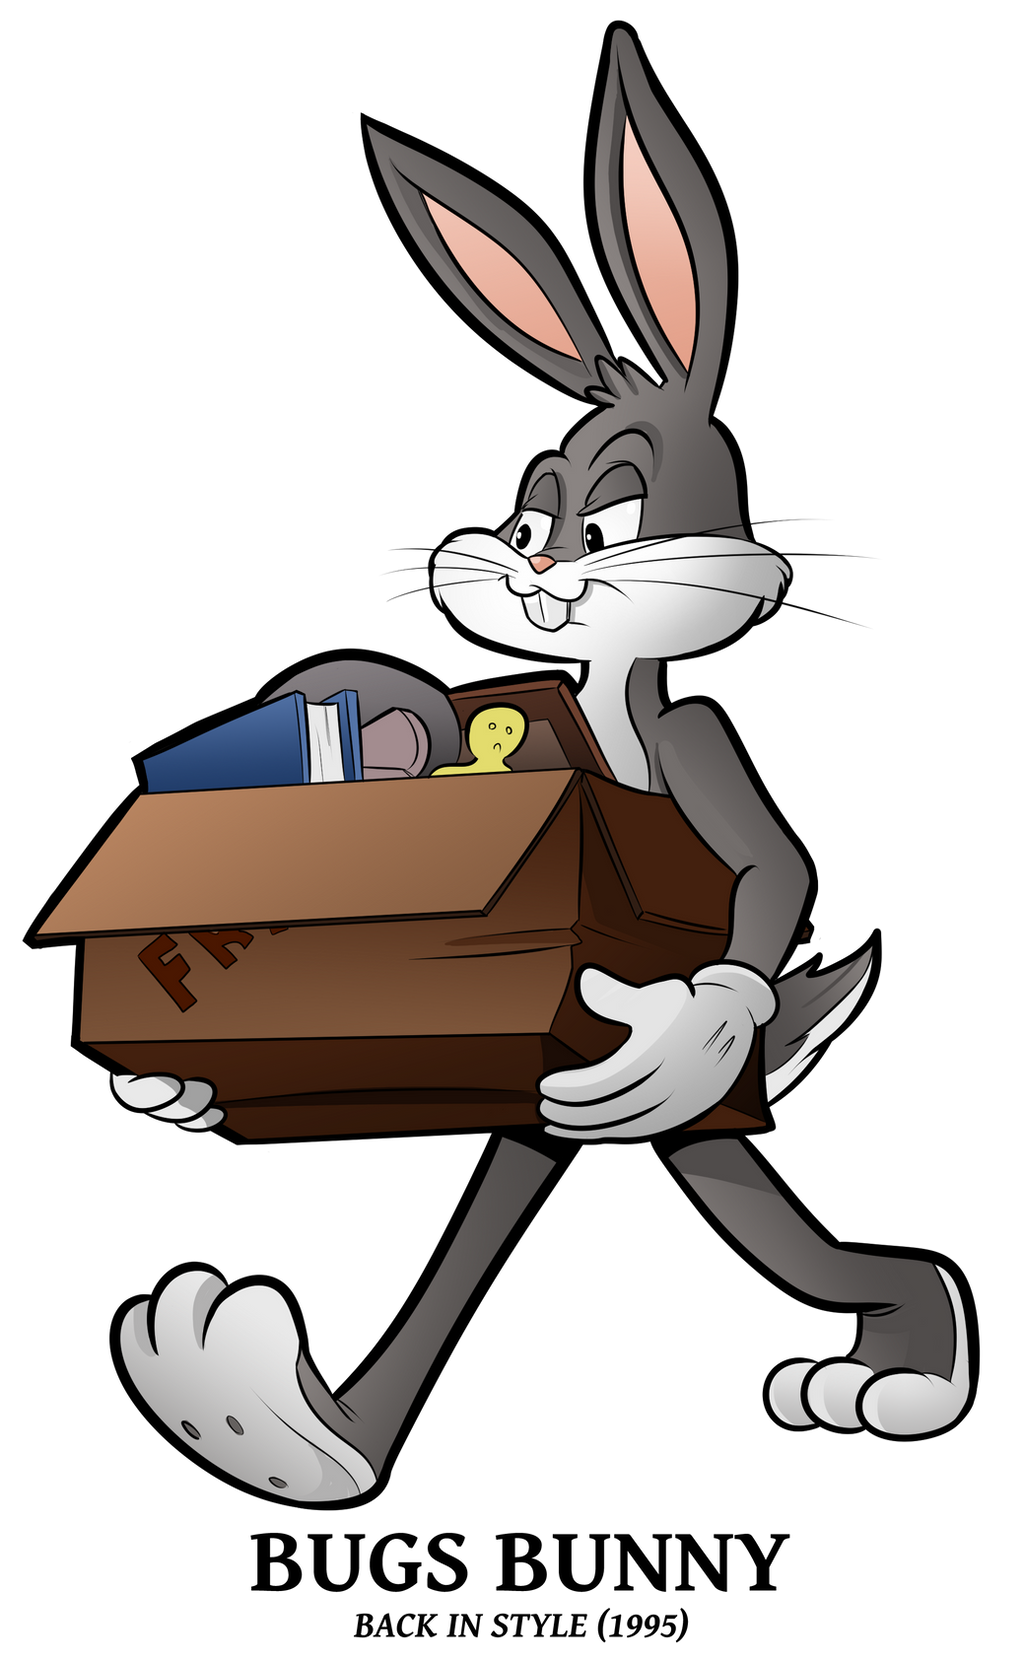 1995 - Bugs Bunny